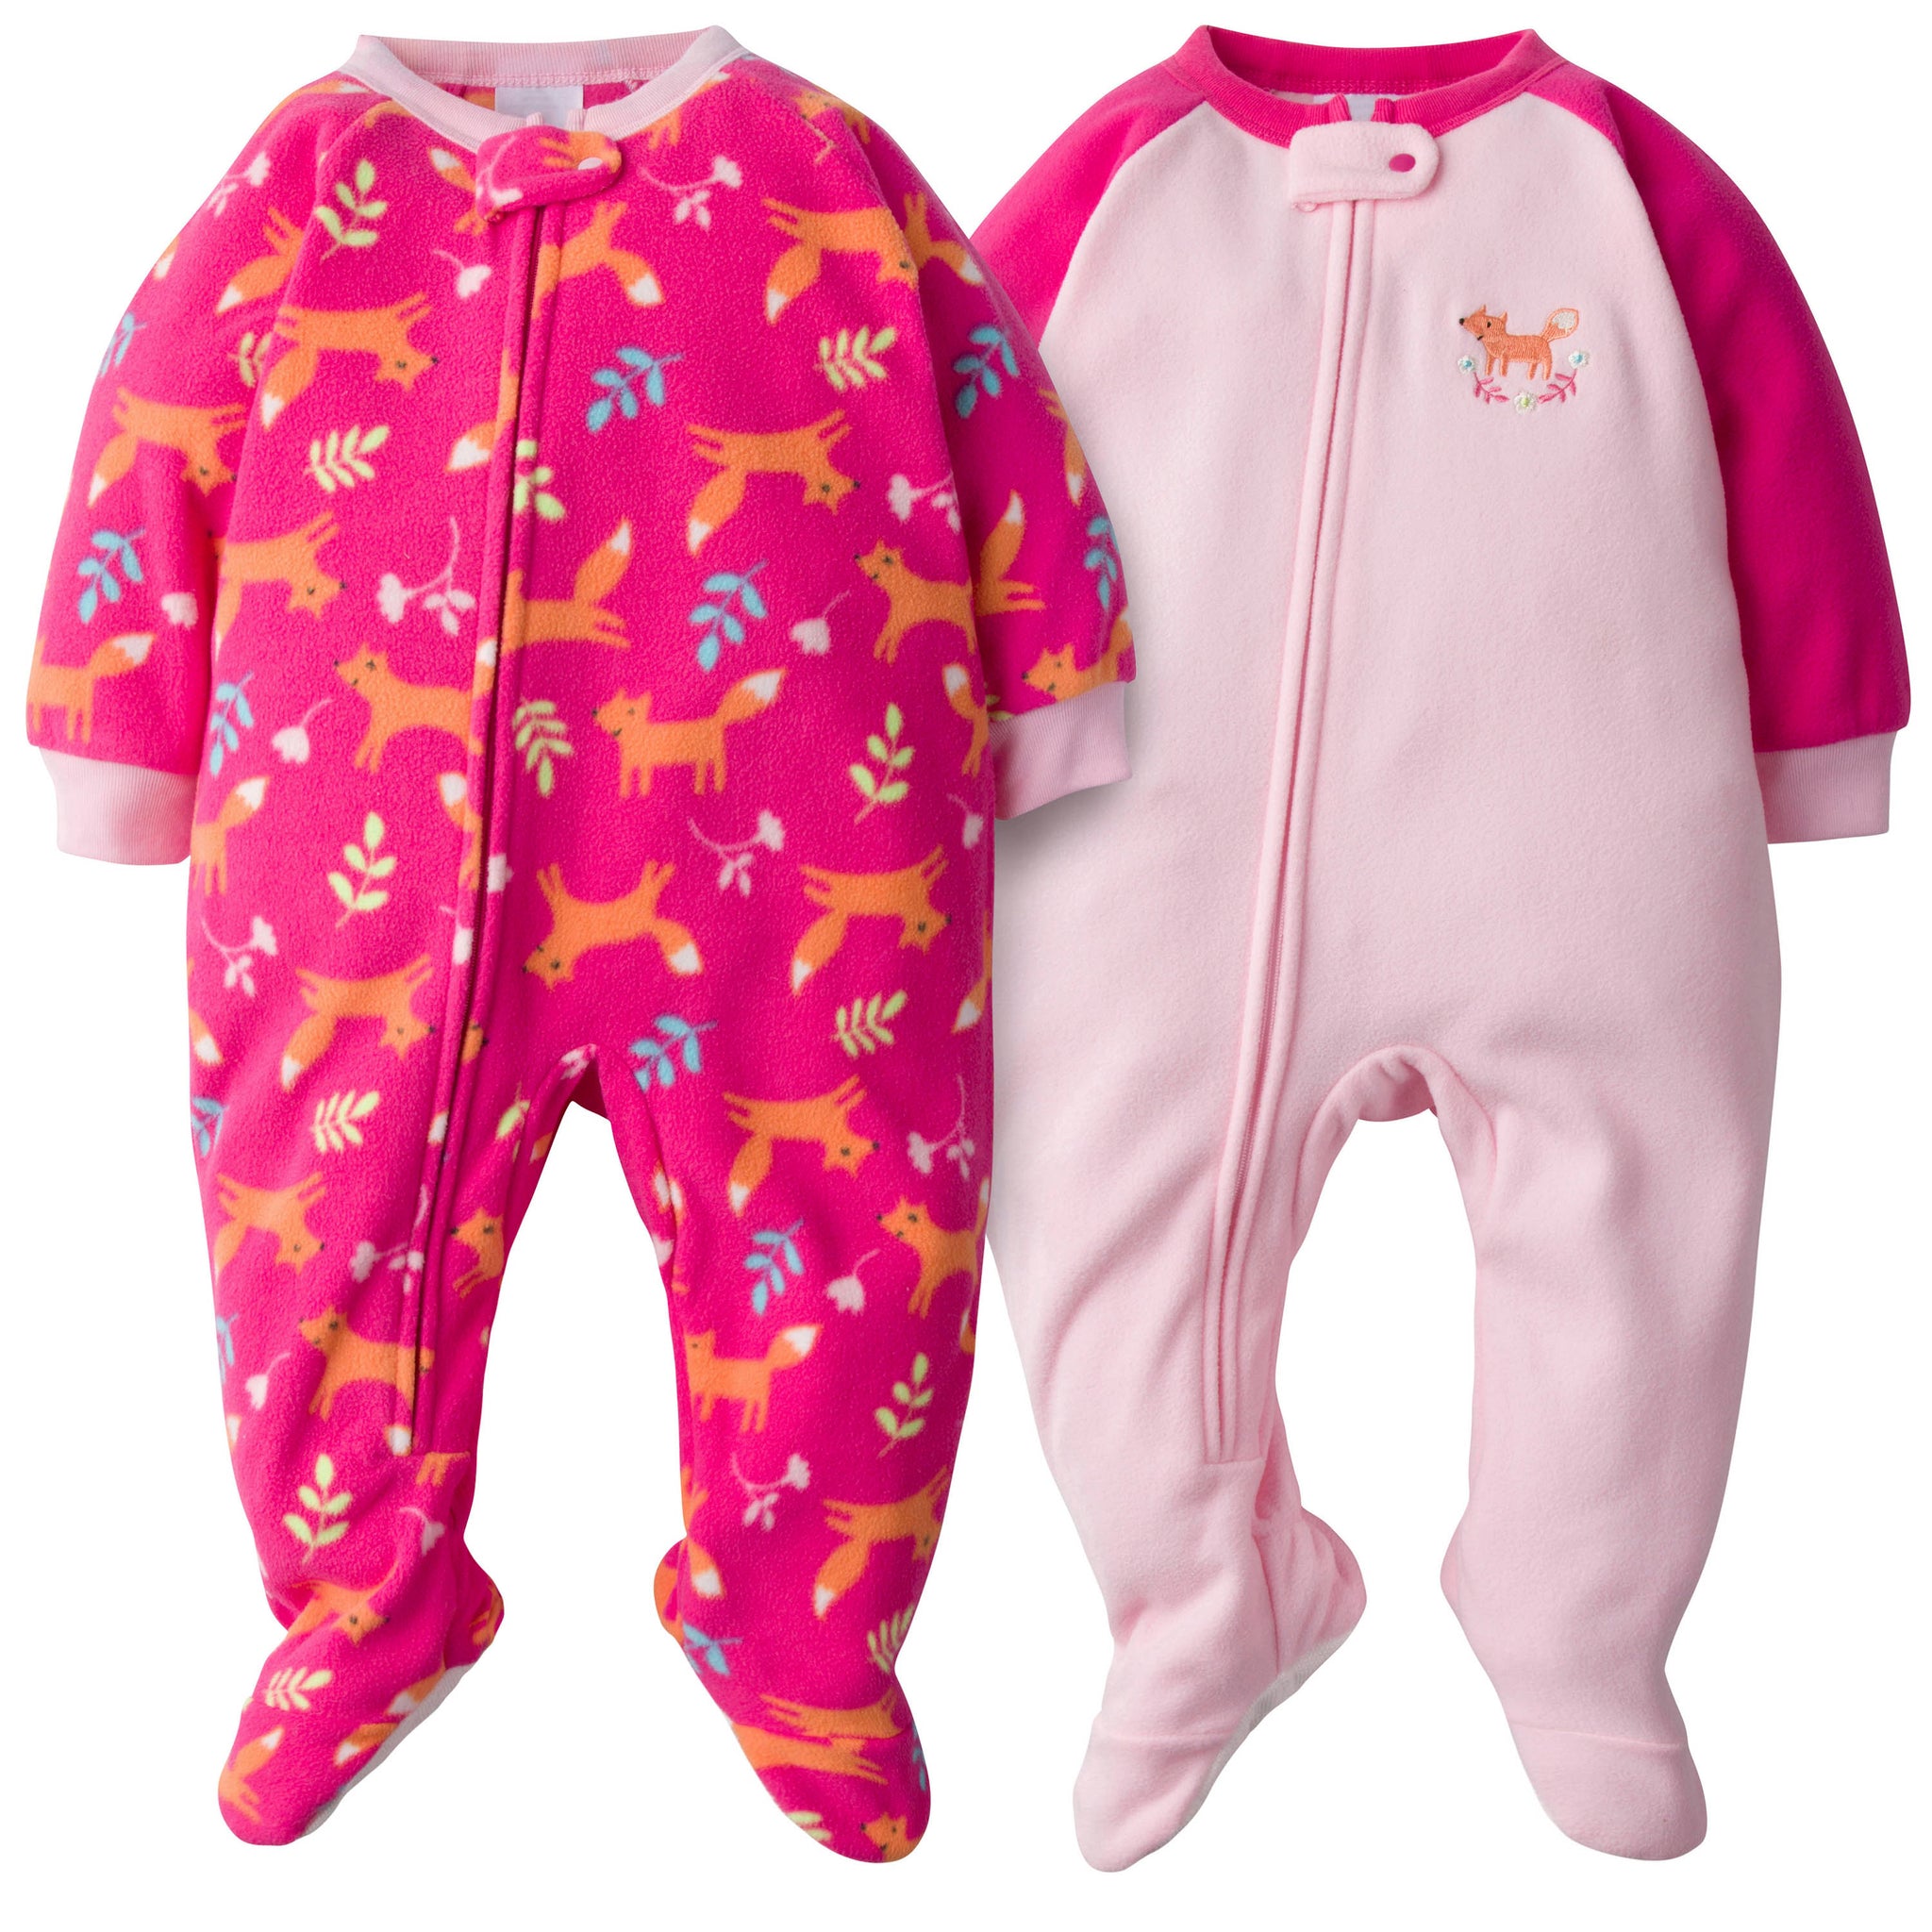 2-Pack Baby Girls Fox Blanket Sleepers-Gerber Childrenswear Wholesale